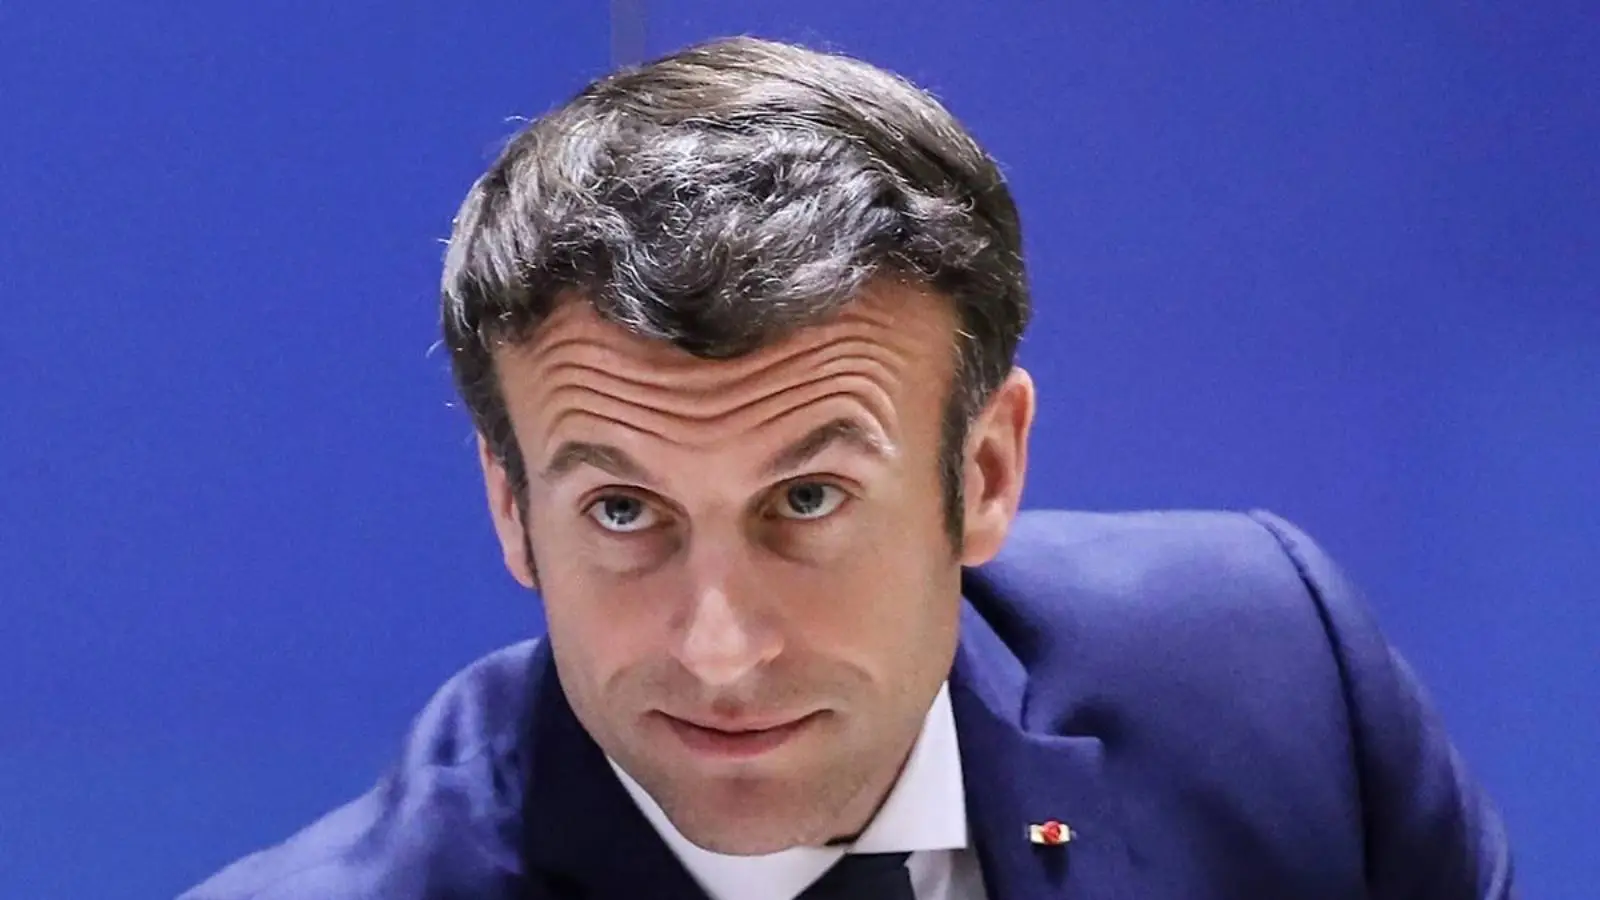 La Francia continuerà a rilasciare visti ai cittadini russi